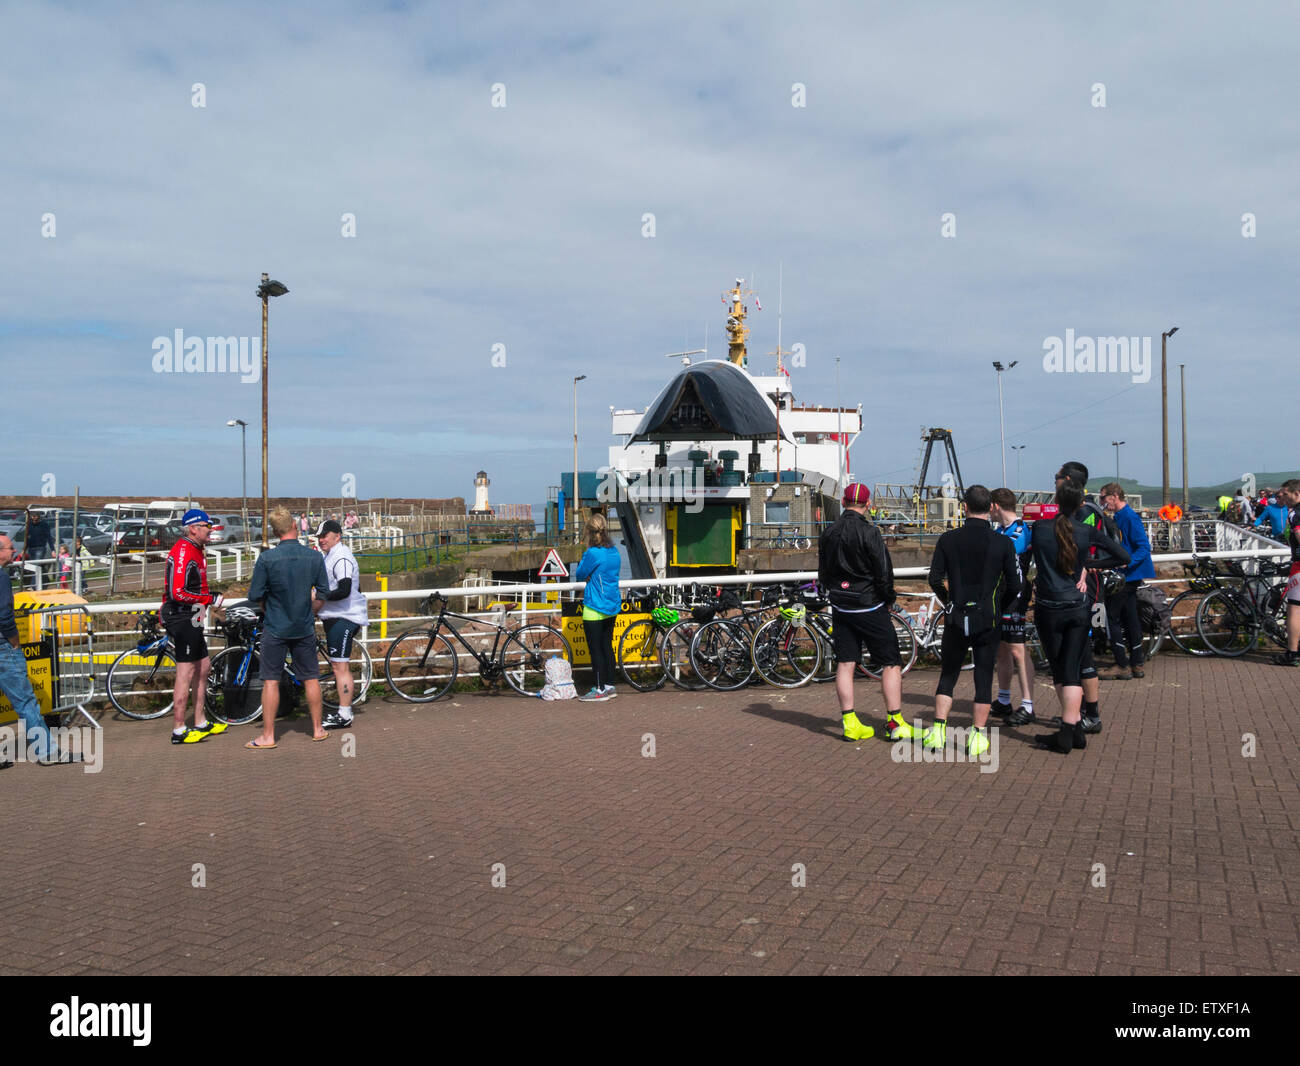 Vacances cyclistes masculins et féminins en attente à Ardrossan Ayrshire Ecosse ferry port de ferry pour l'île d'Arran sur un beau ciel bleu météo jour Mai Banque D'Images